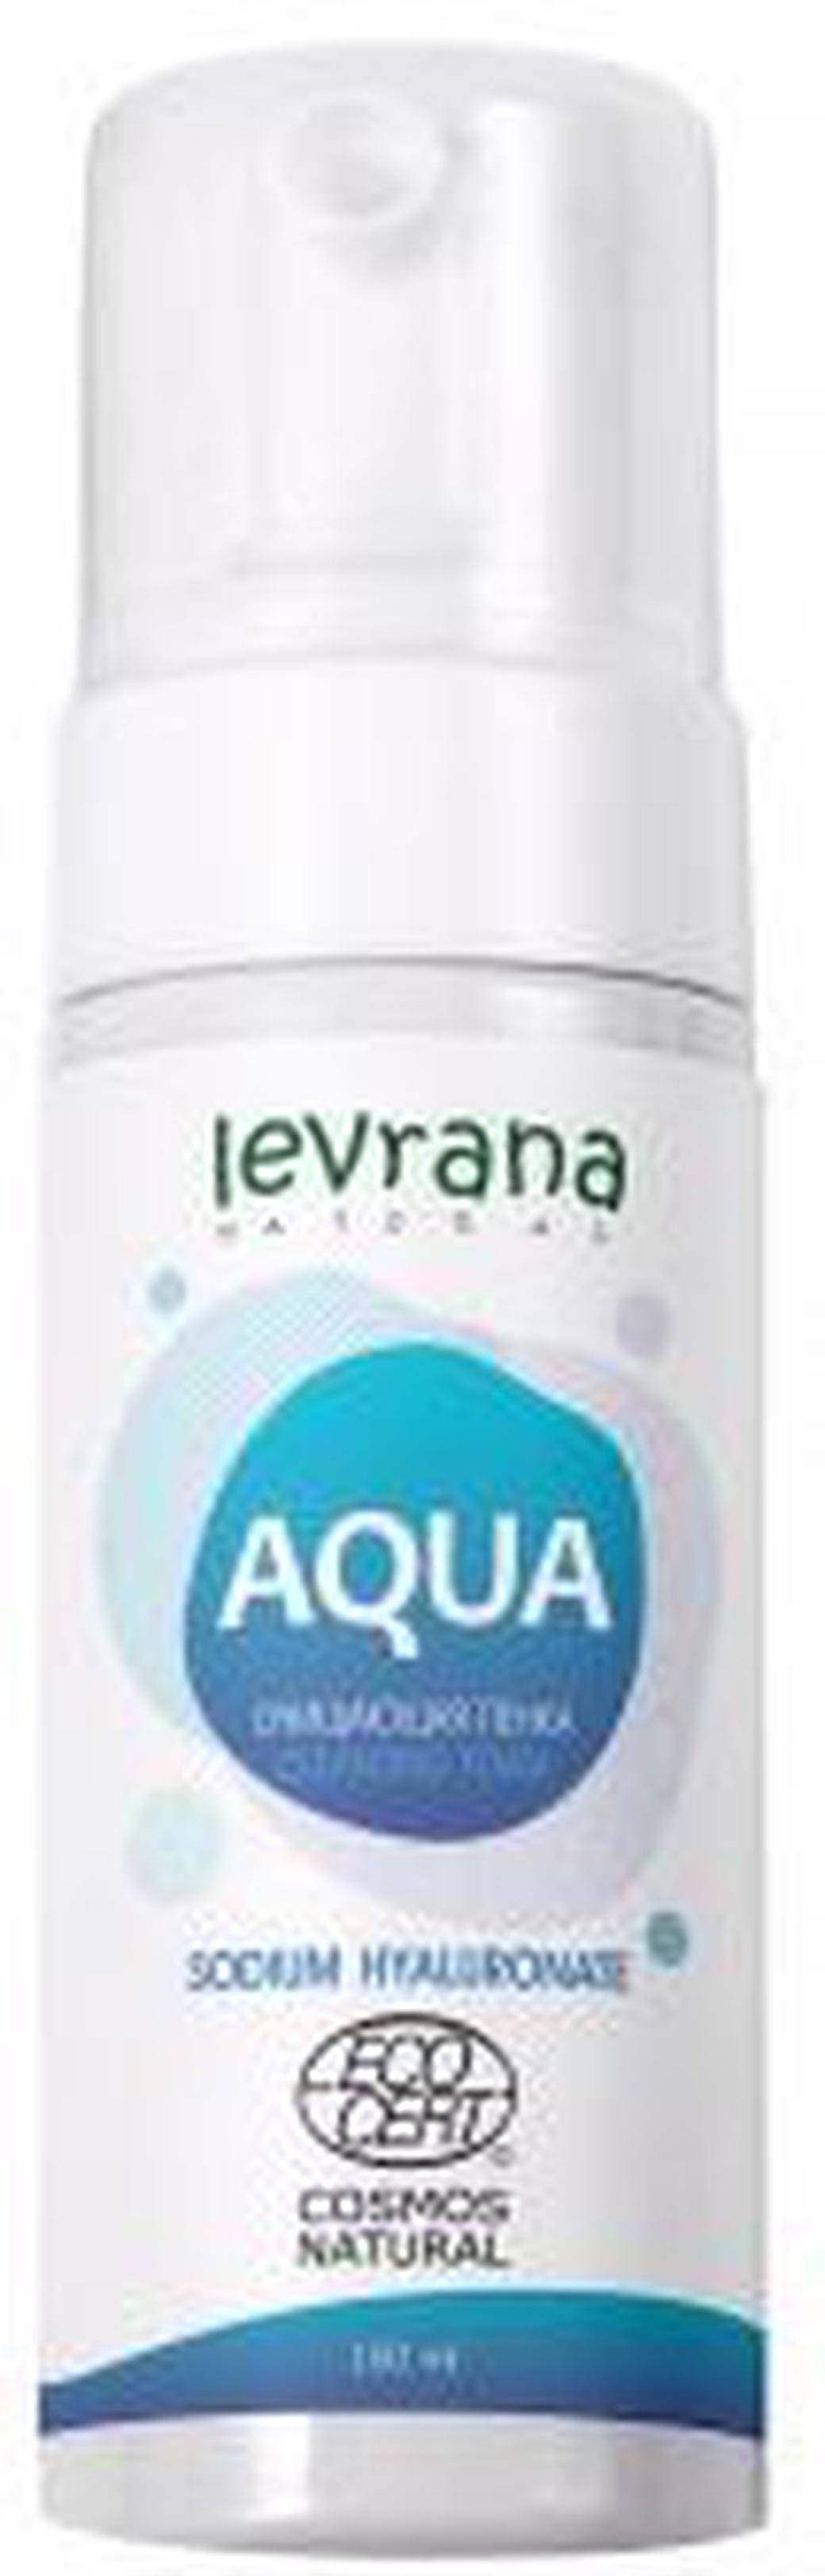 Levrana Пенка для умывания Aqua с гиалуроновой кислотой, 150 мл Ecocert фото